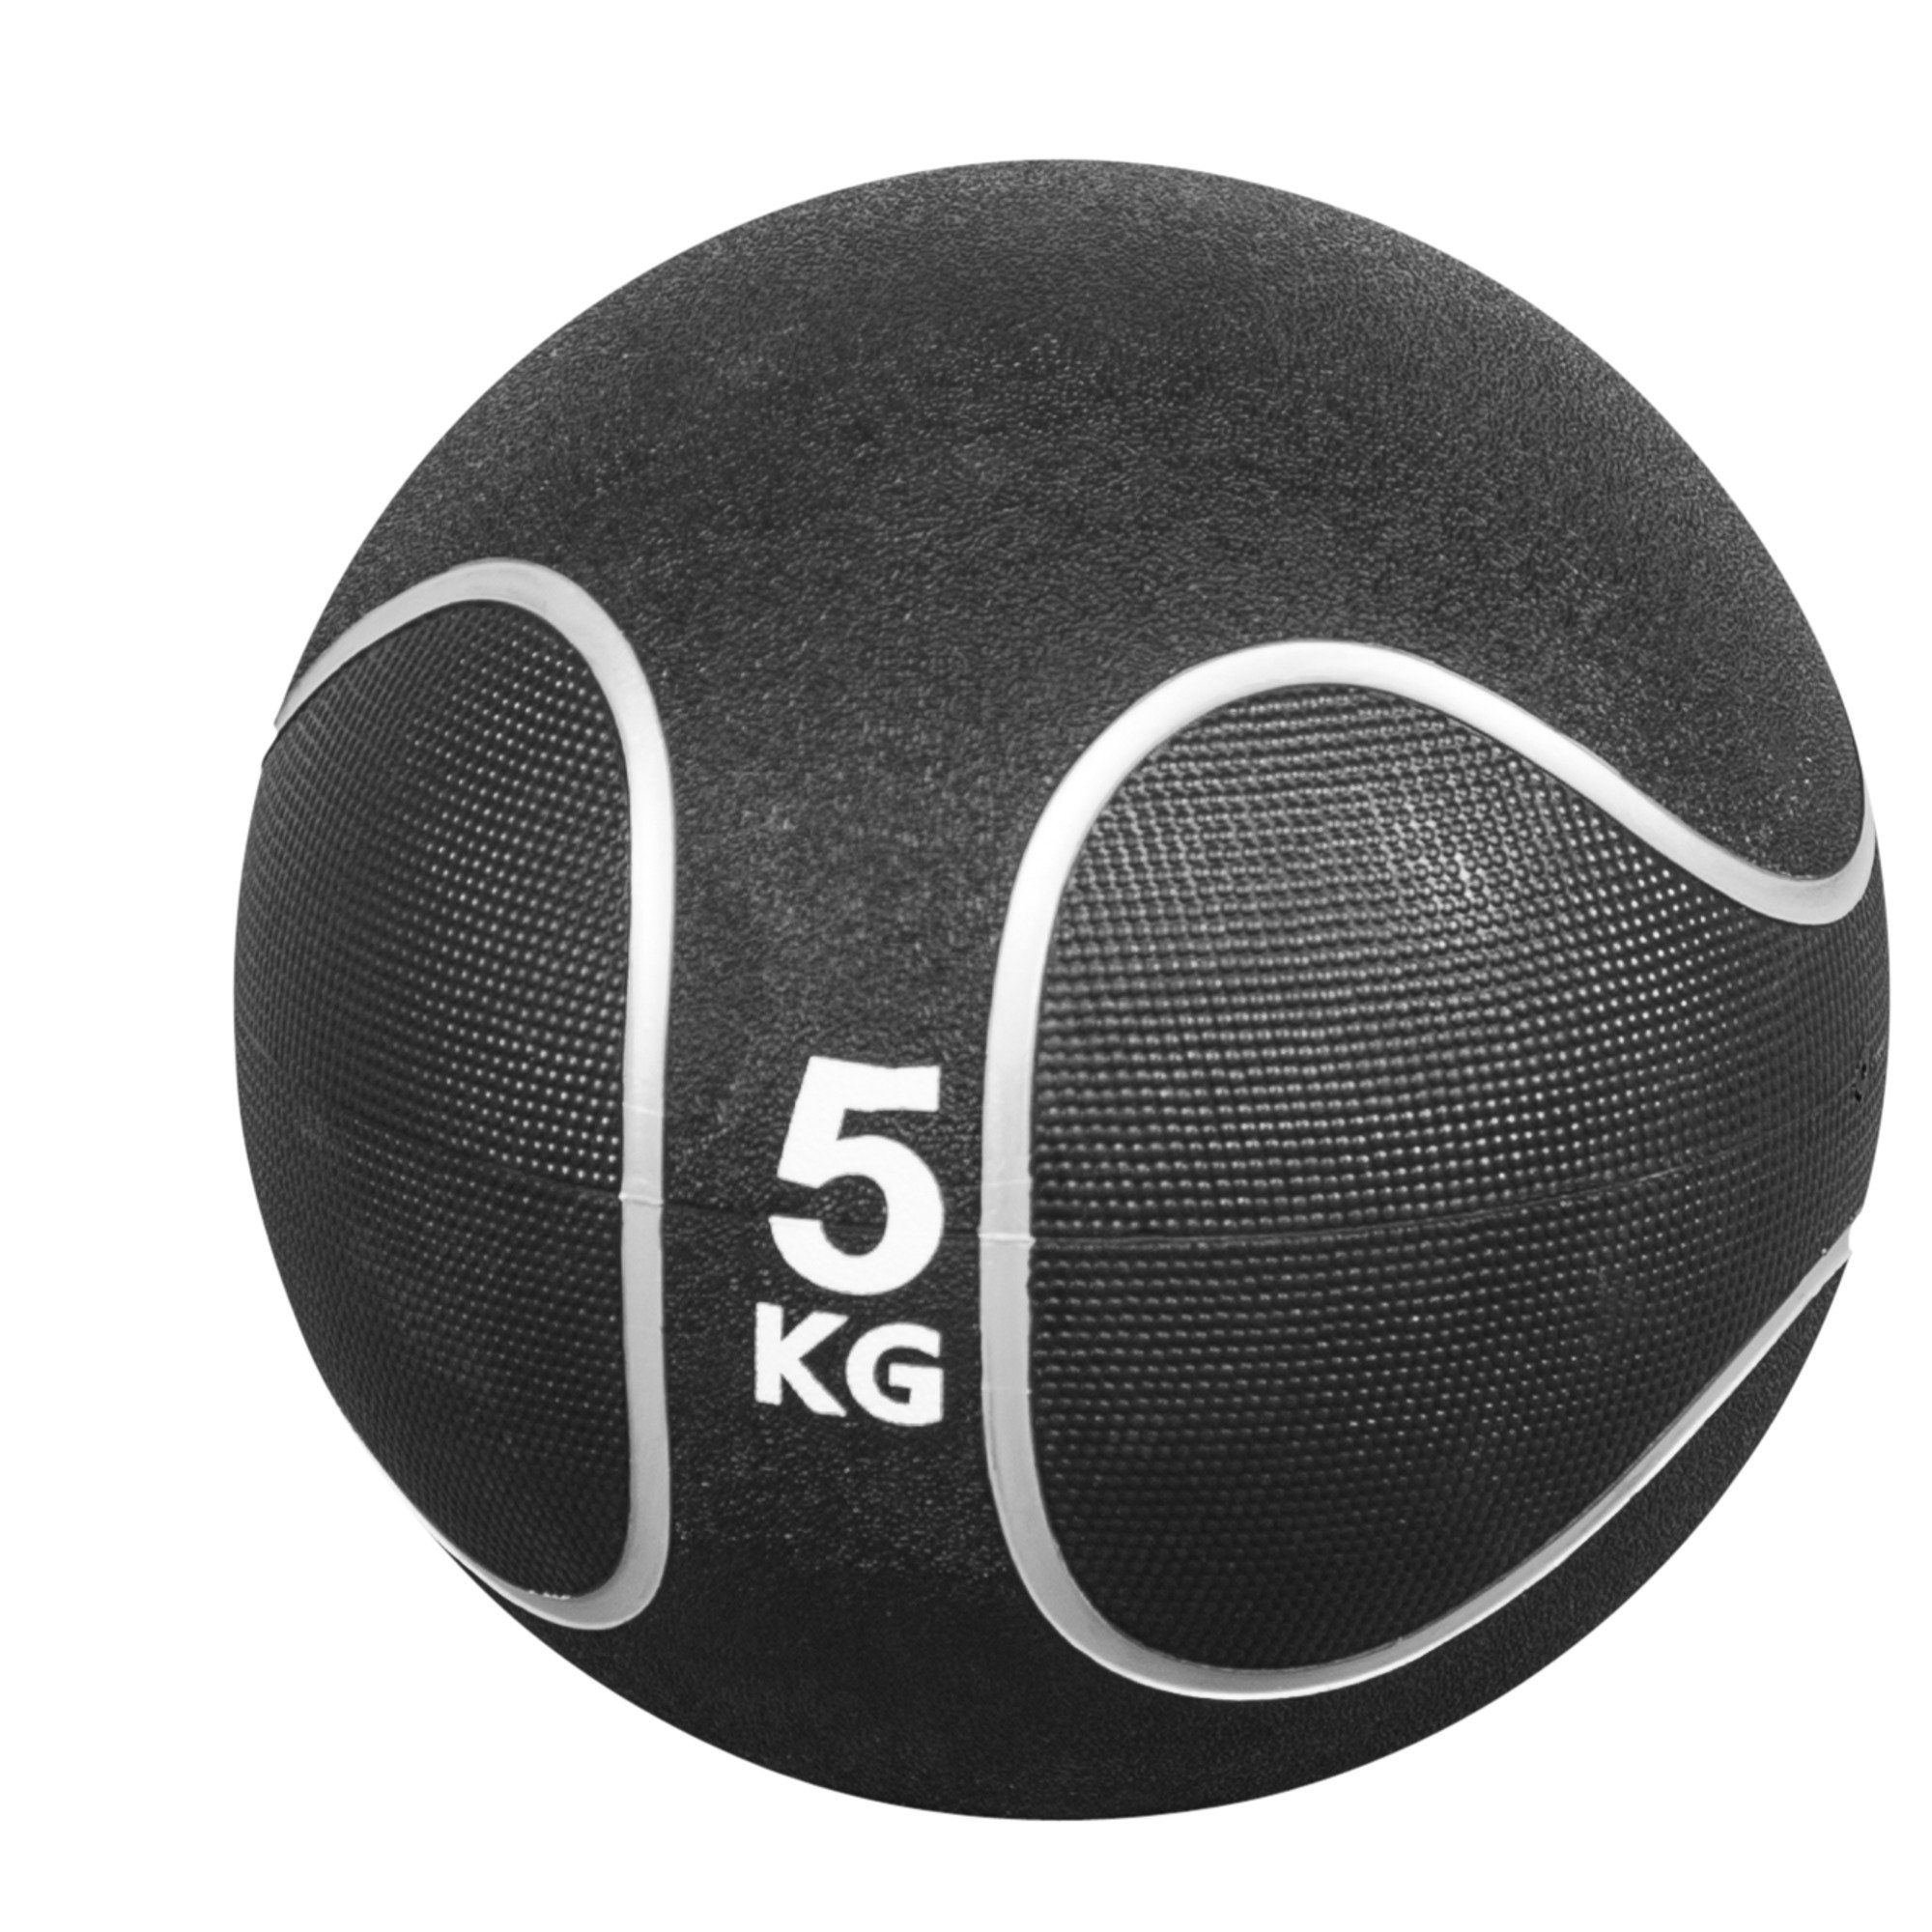 GORILLA SPORTS Medizinball Einzeln / Set, Ø 23 oder 29 cm, rutschfest, aus Gummi, Fitnessball 5 KG